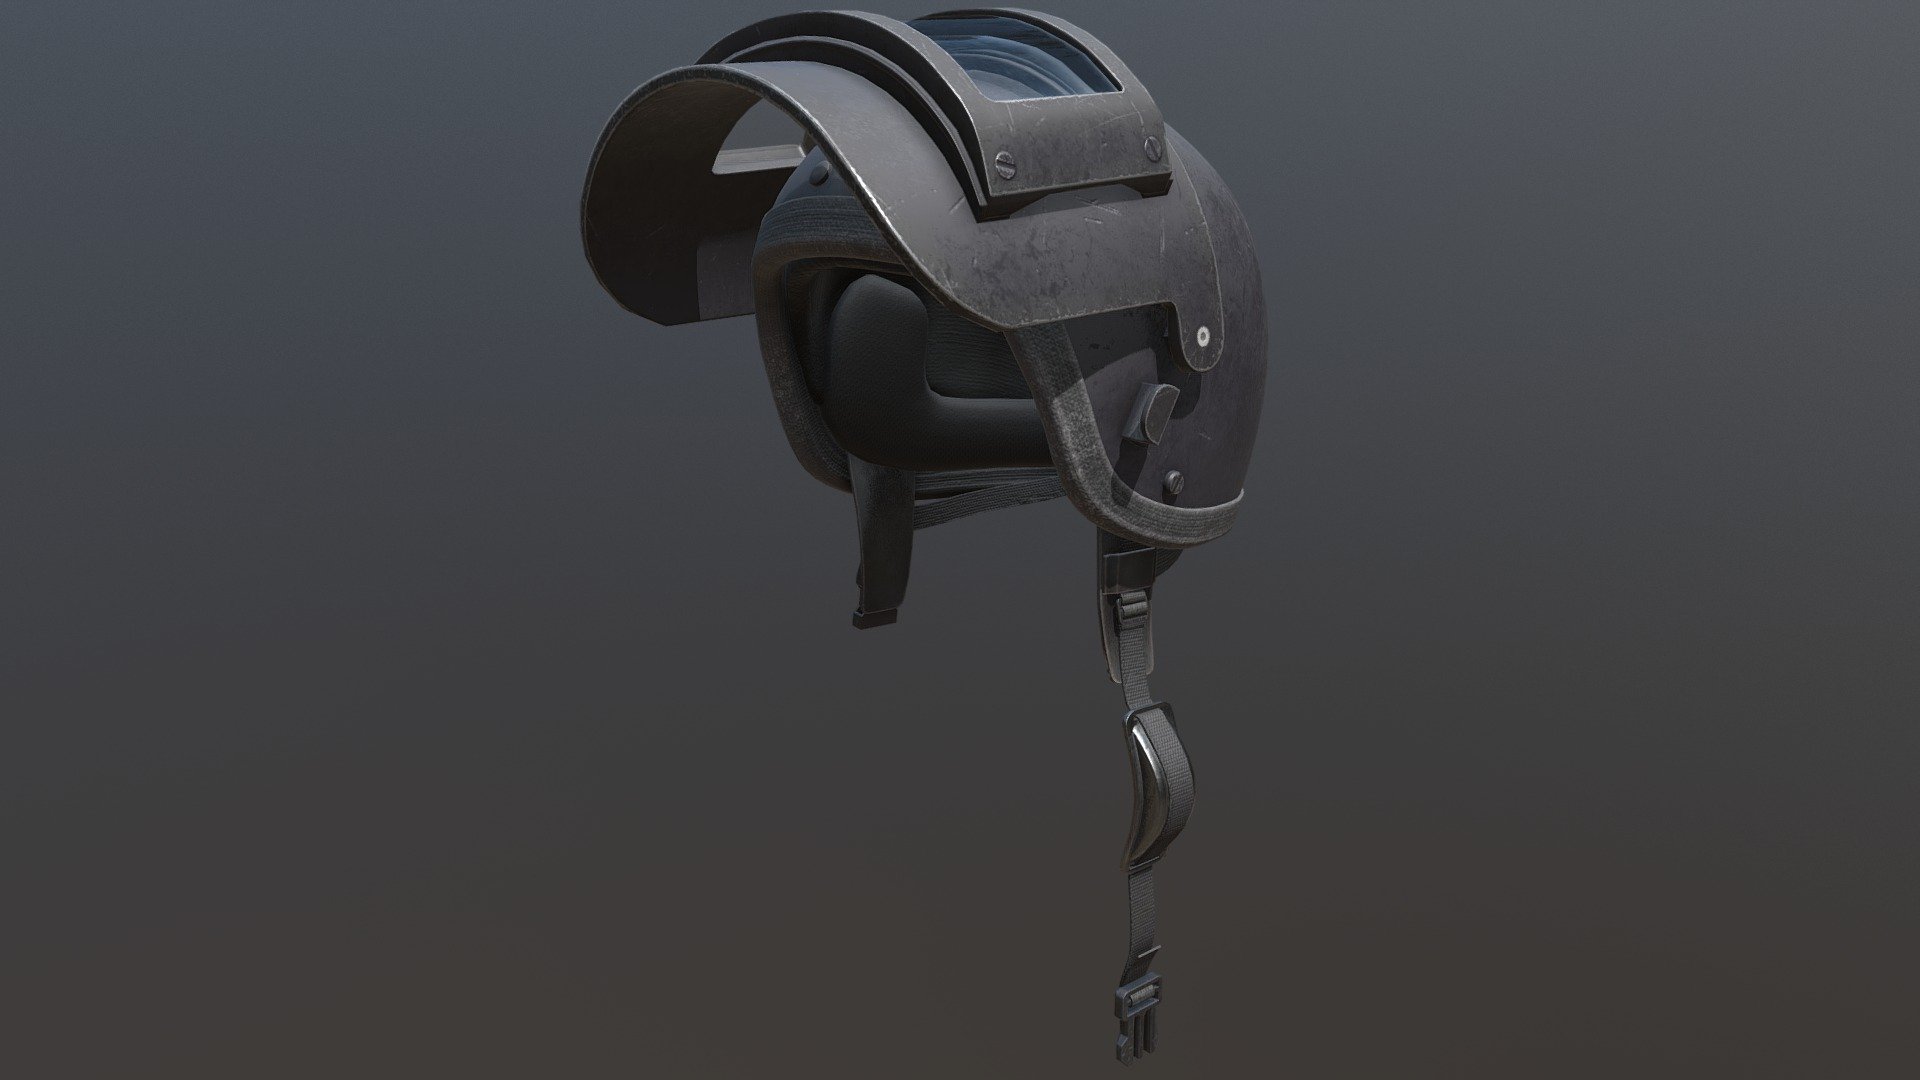 K6-3 Helmet